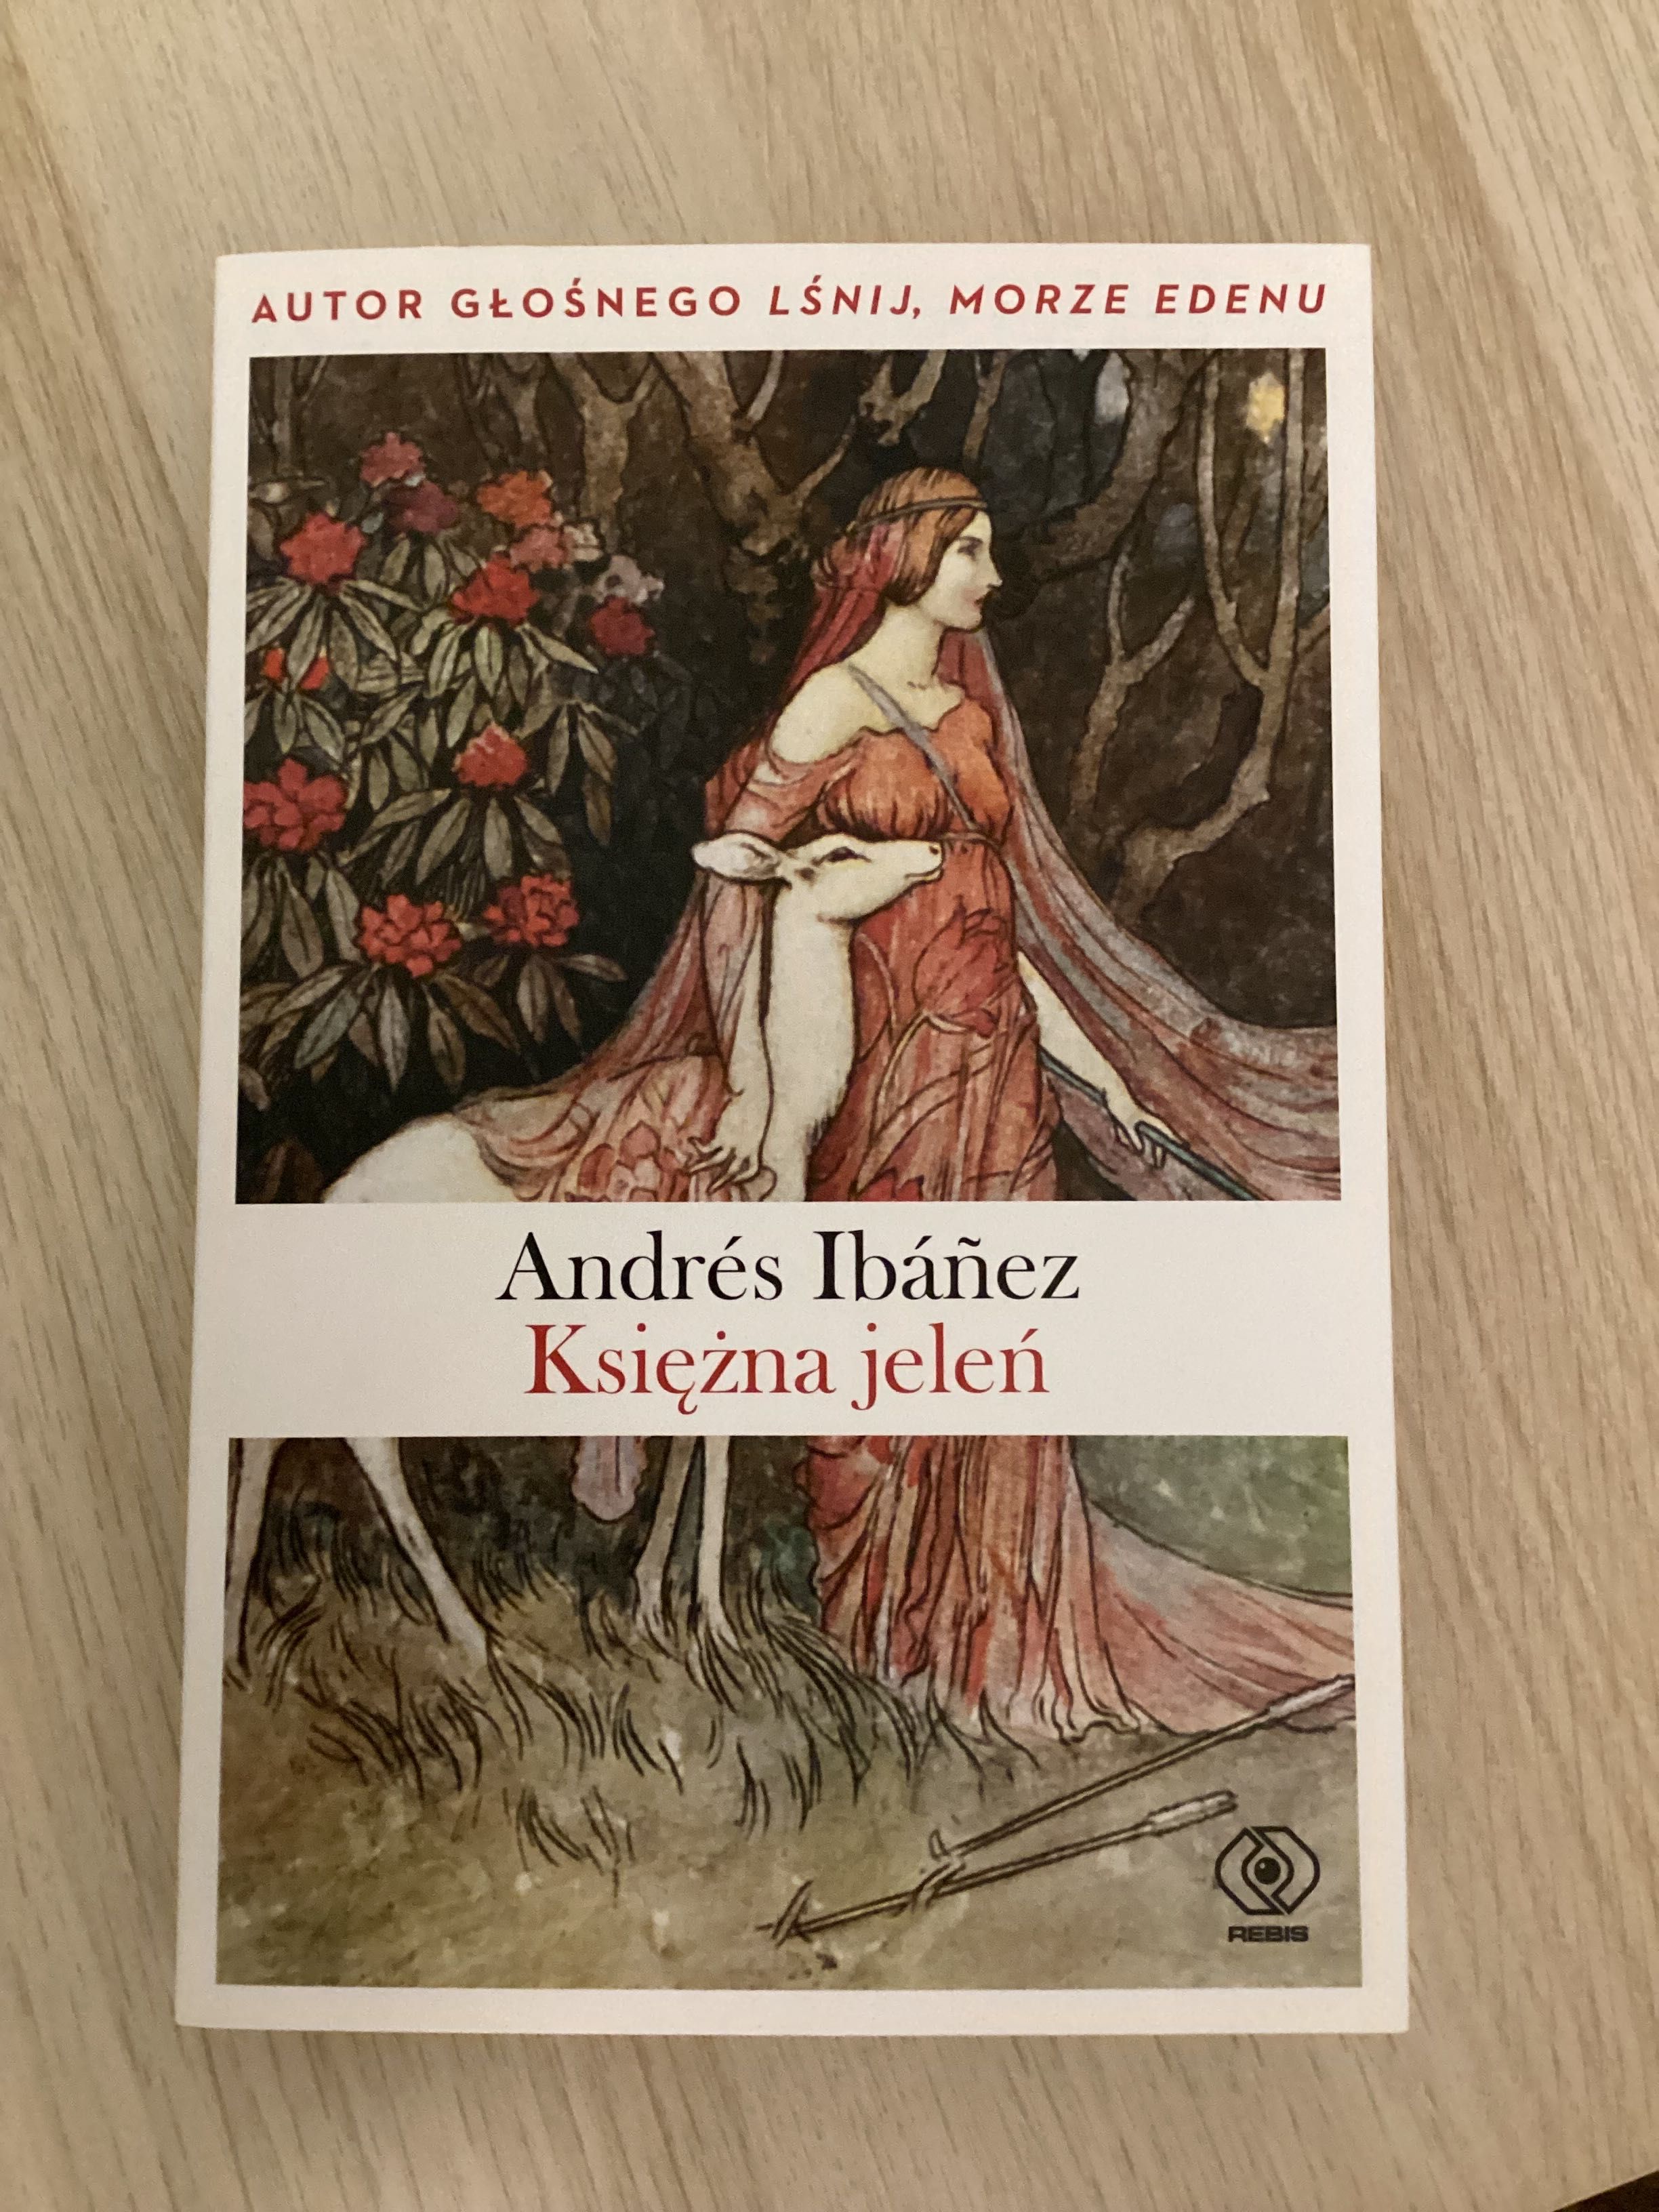 Książka Andres Ibanez „Księżna jeleń”